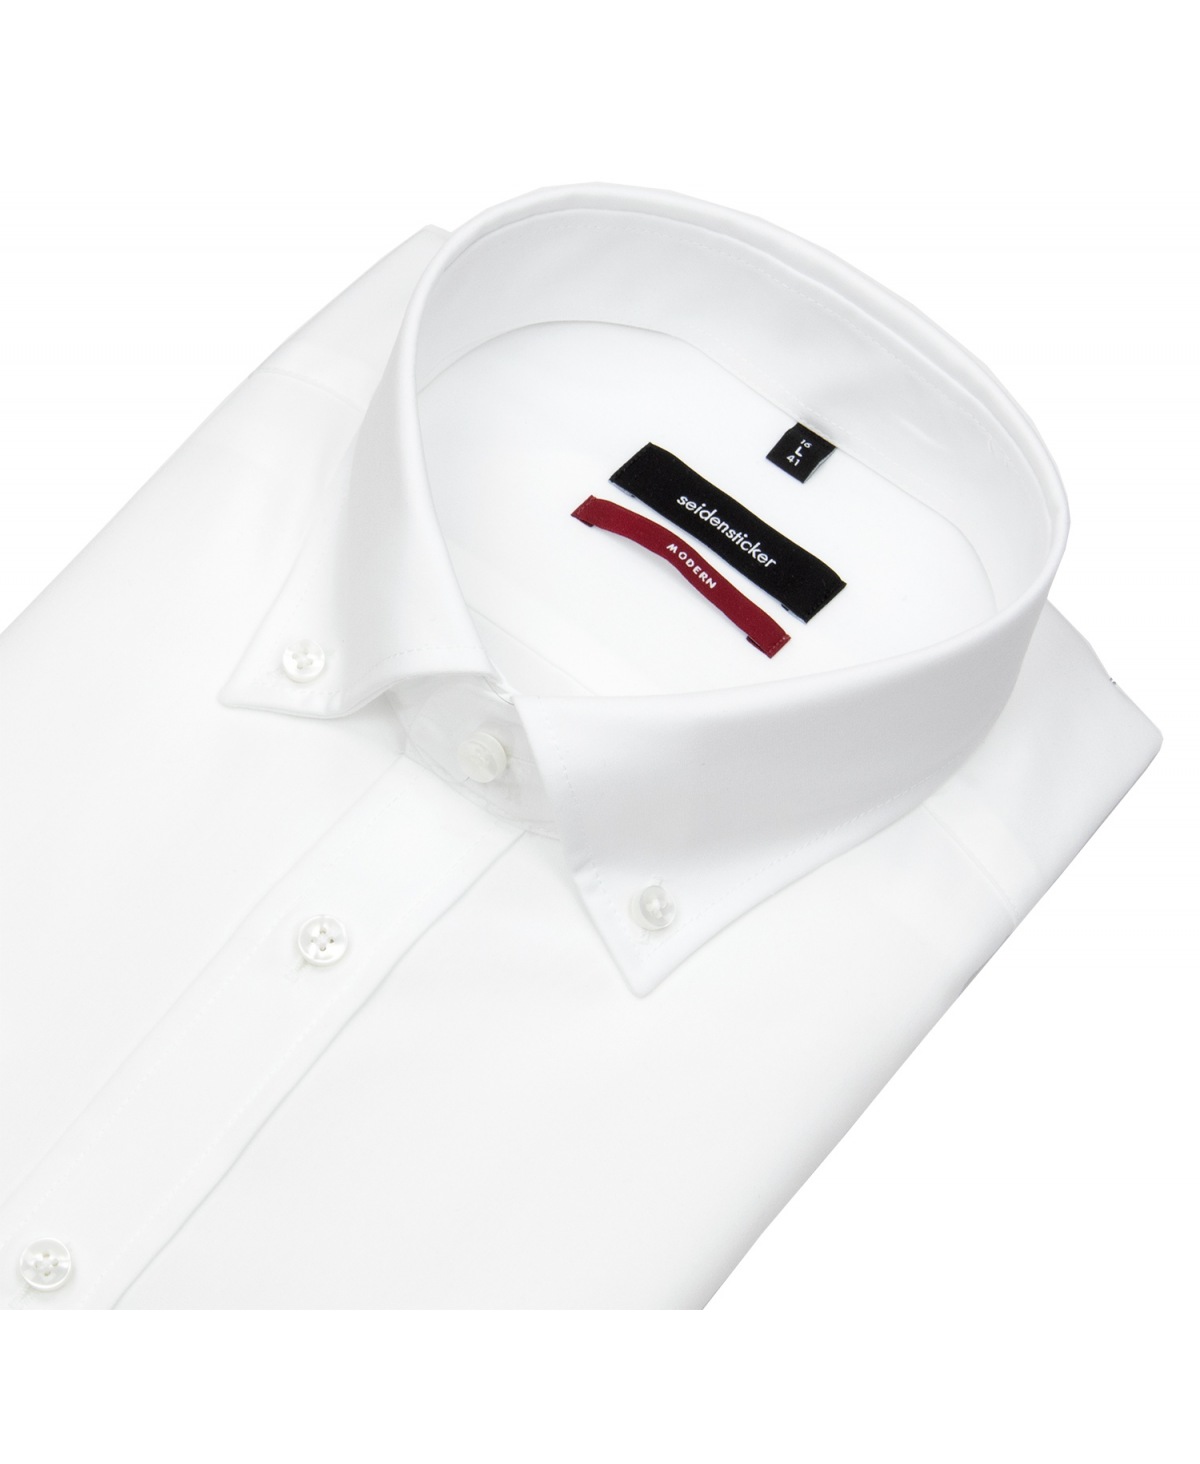 Seidensticker Hemd - Regular Fit - Button-Down Kragen - weiß